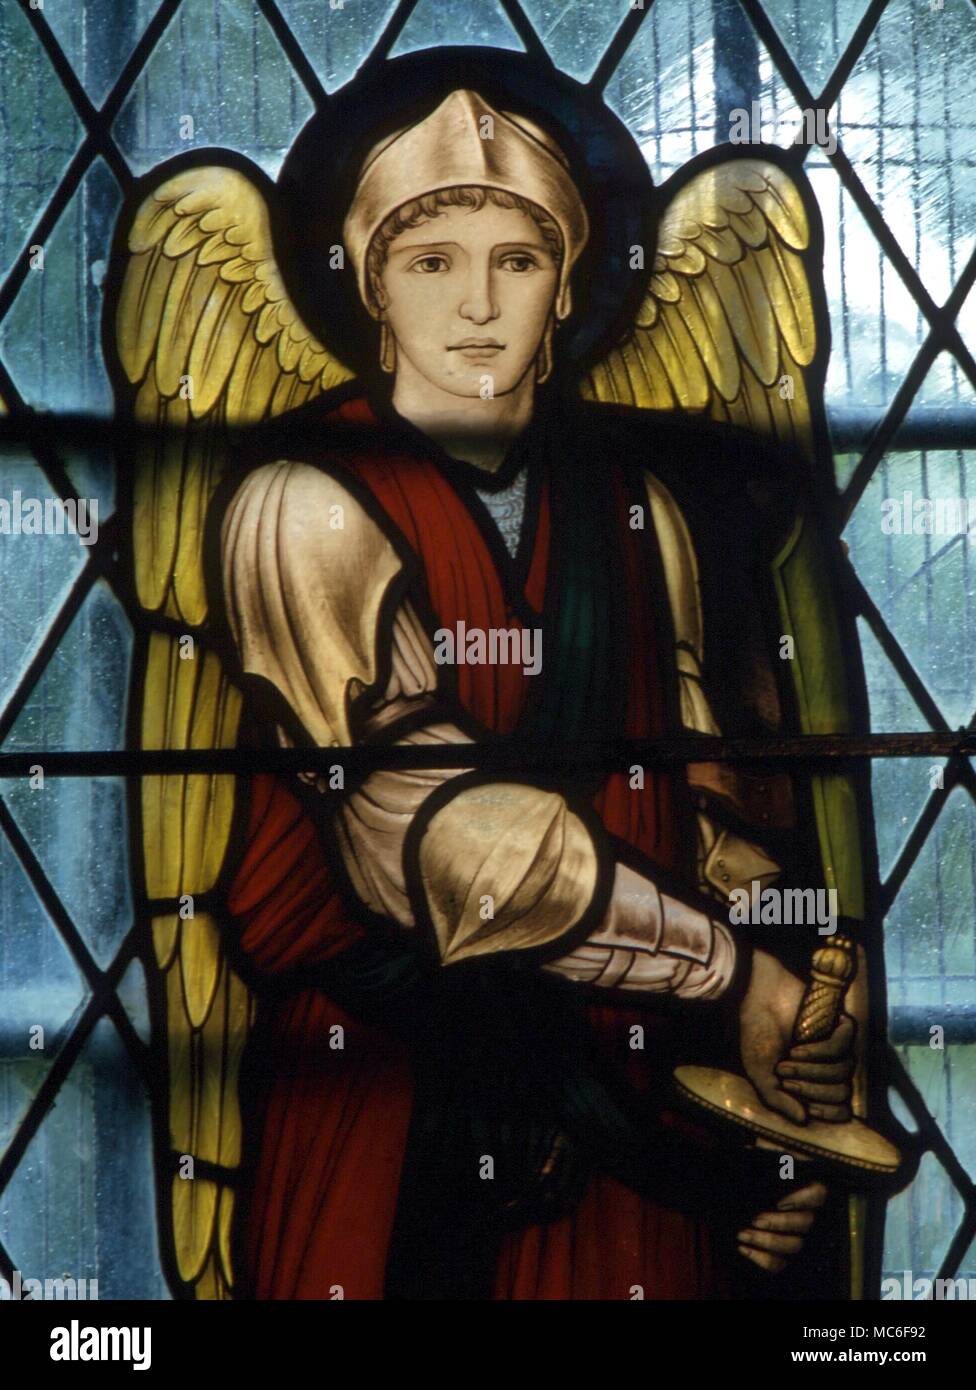 Les saints - Tête de l'Archange St Michel, de l'Église vitrail en Chaldon, Surrey. Vitraux du 19e siècle Banque D'Images